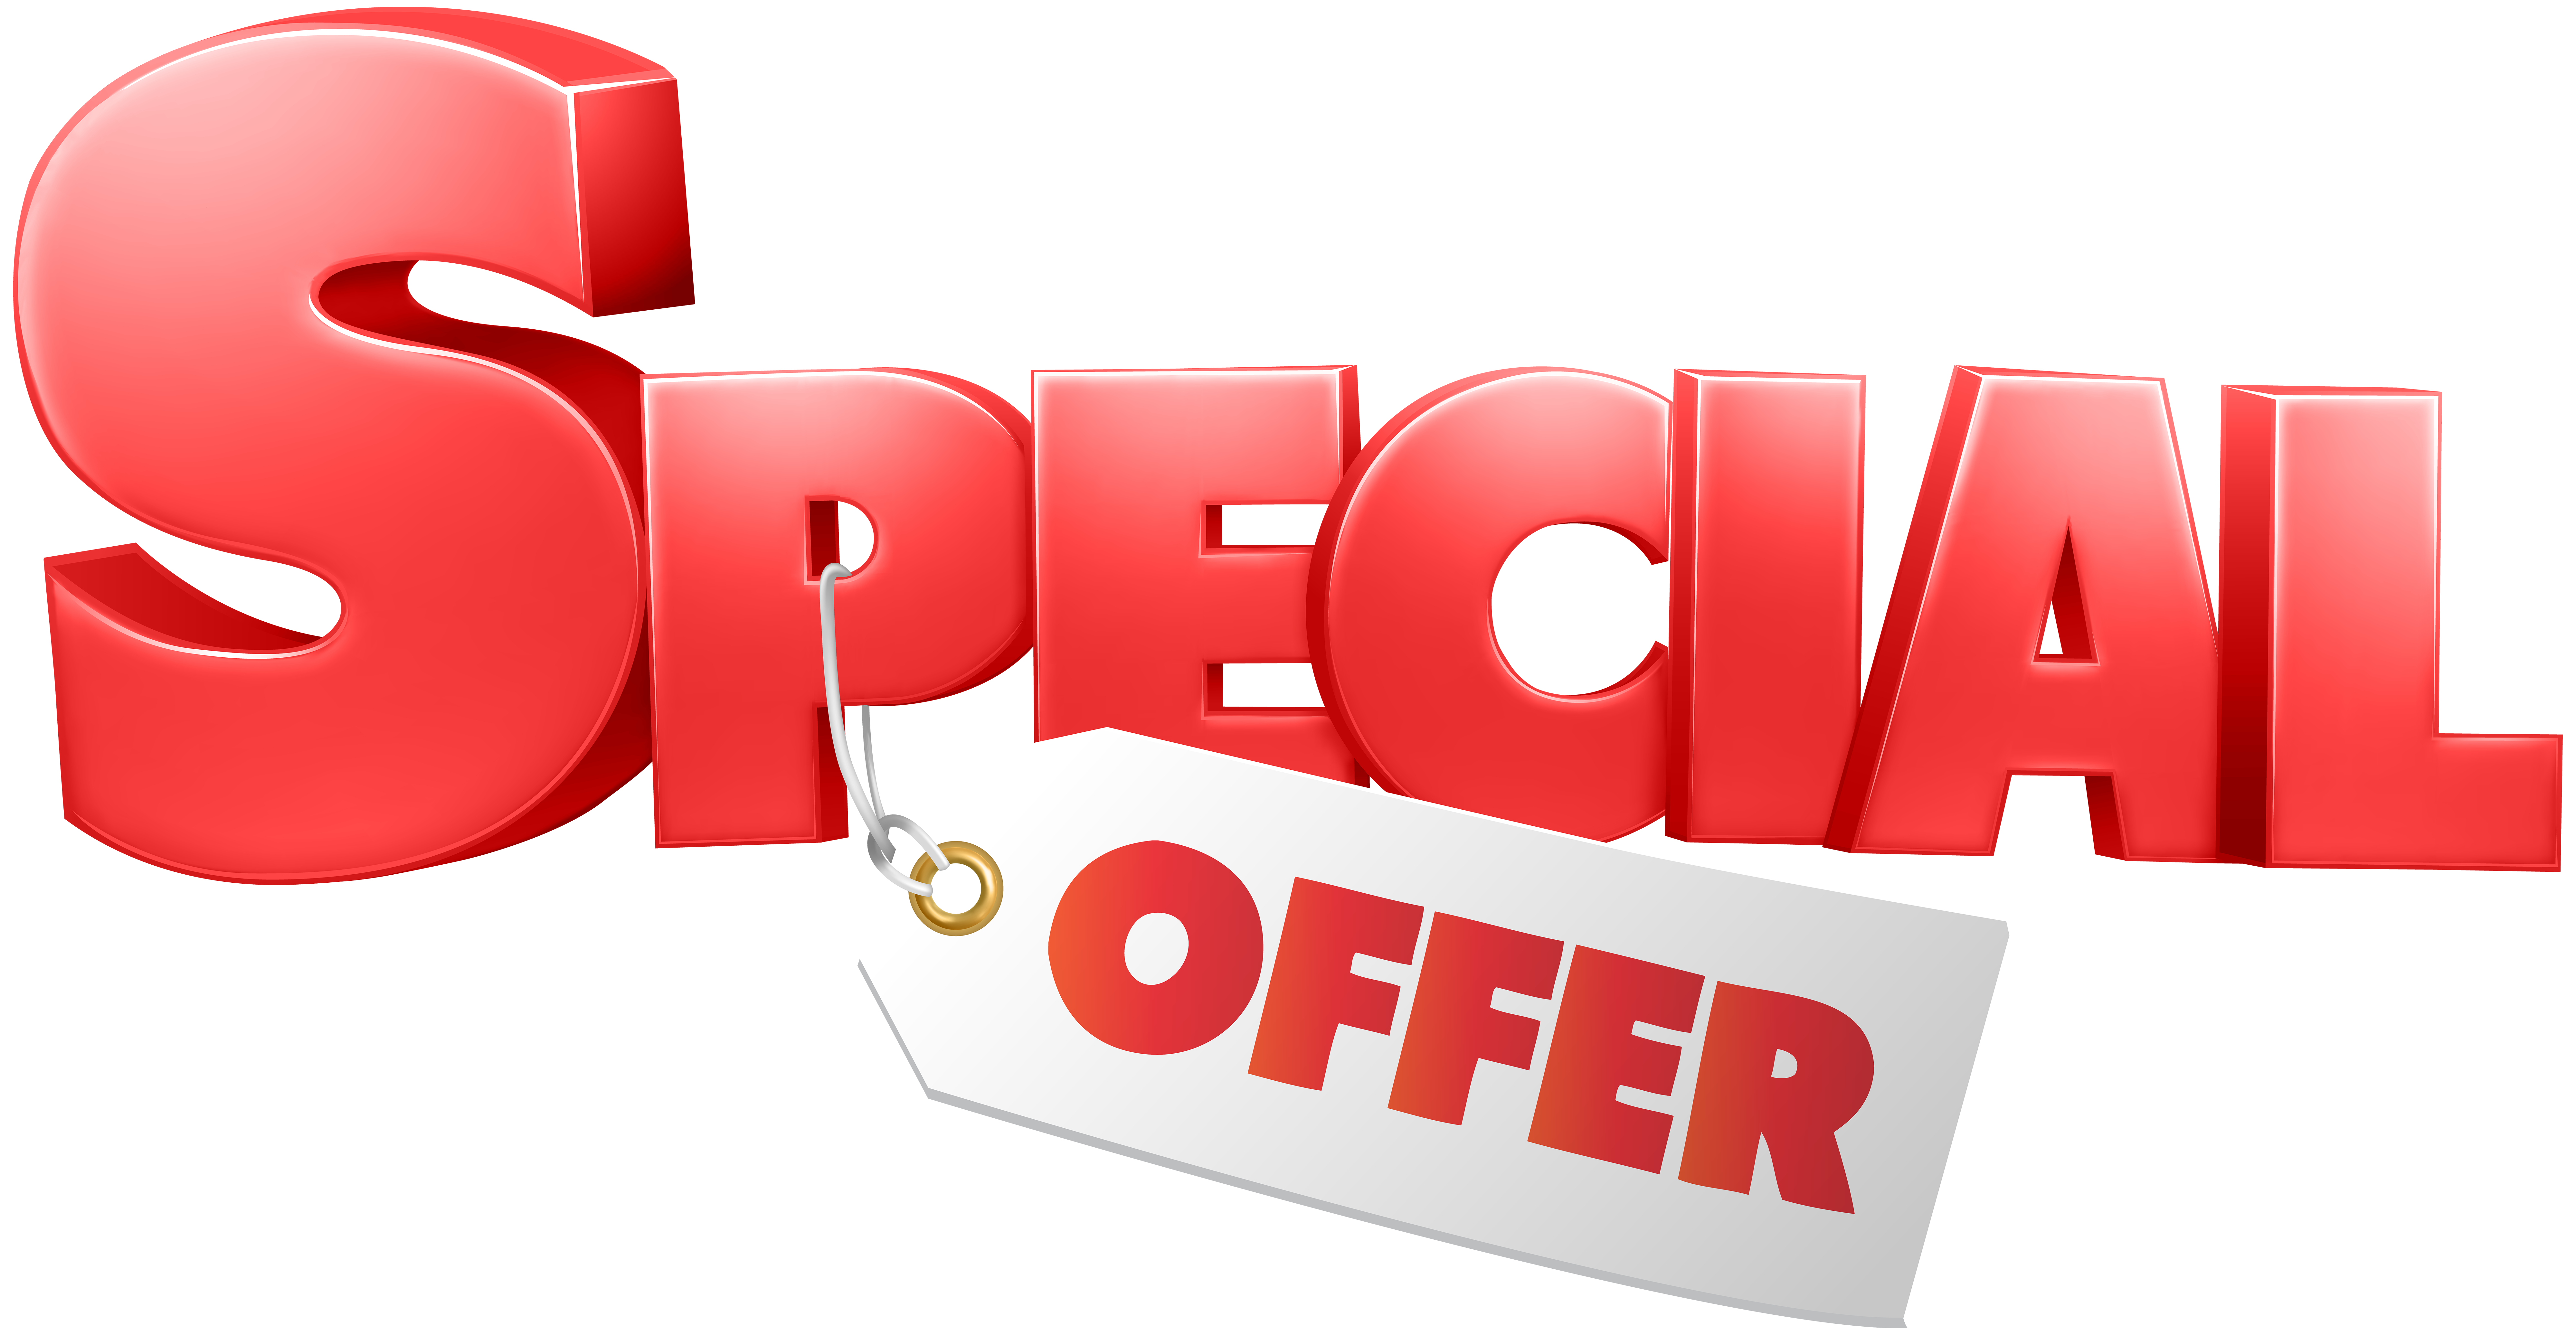 Special. Special offer. Специальное предложение на прозрачном фоне. Супер предложение. Special offer на прозрачном фоне.